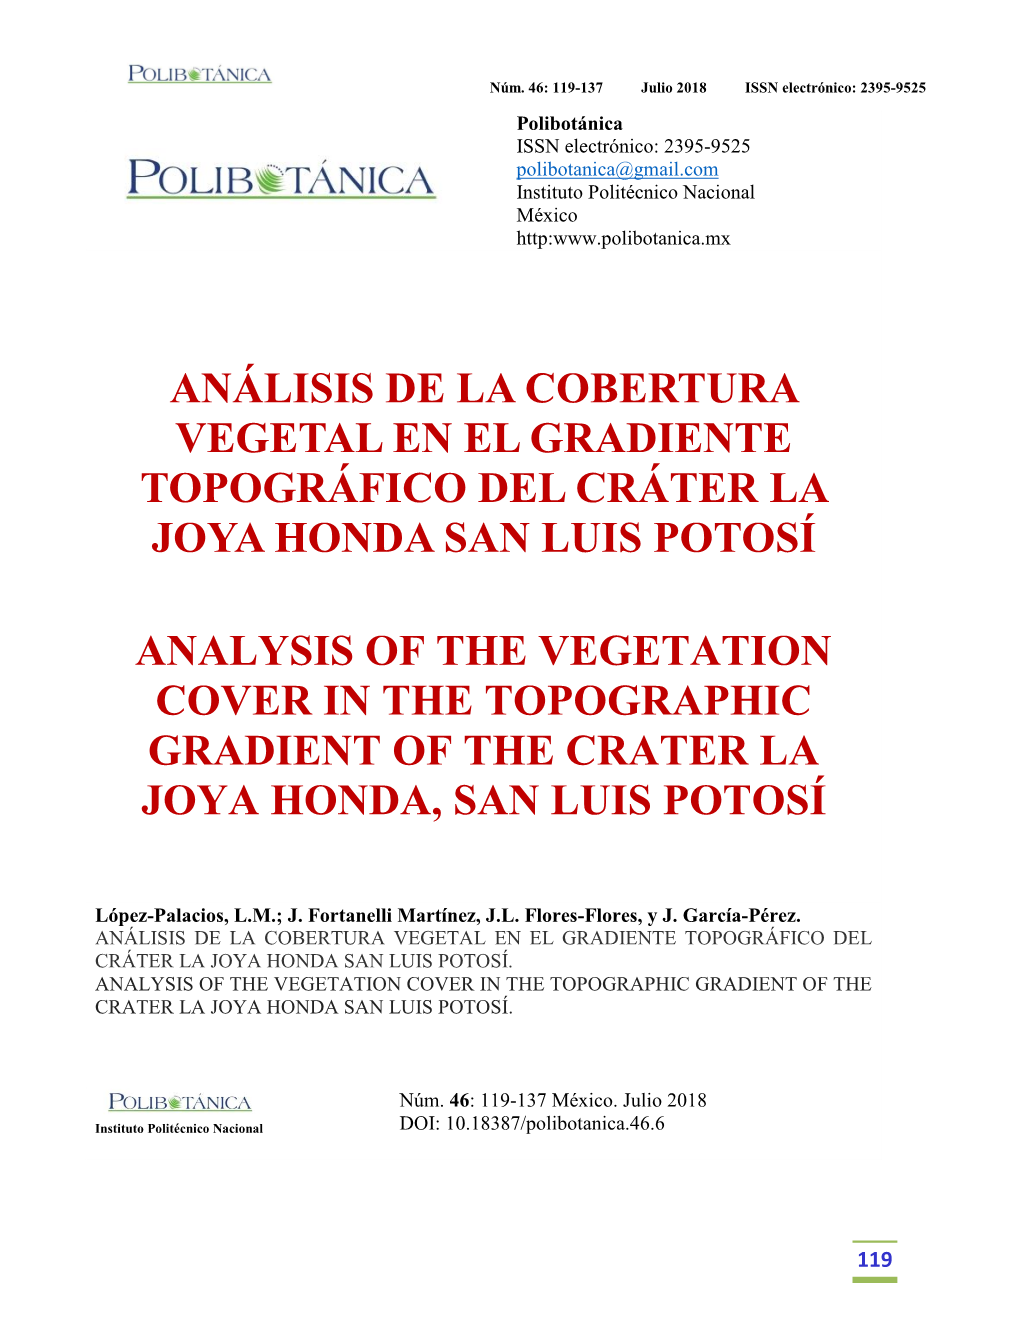 Análisis De La Cobertura Vegetal En El Gradiente Topográfico Del Cráter La Joya Honda San Luis Potosí